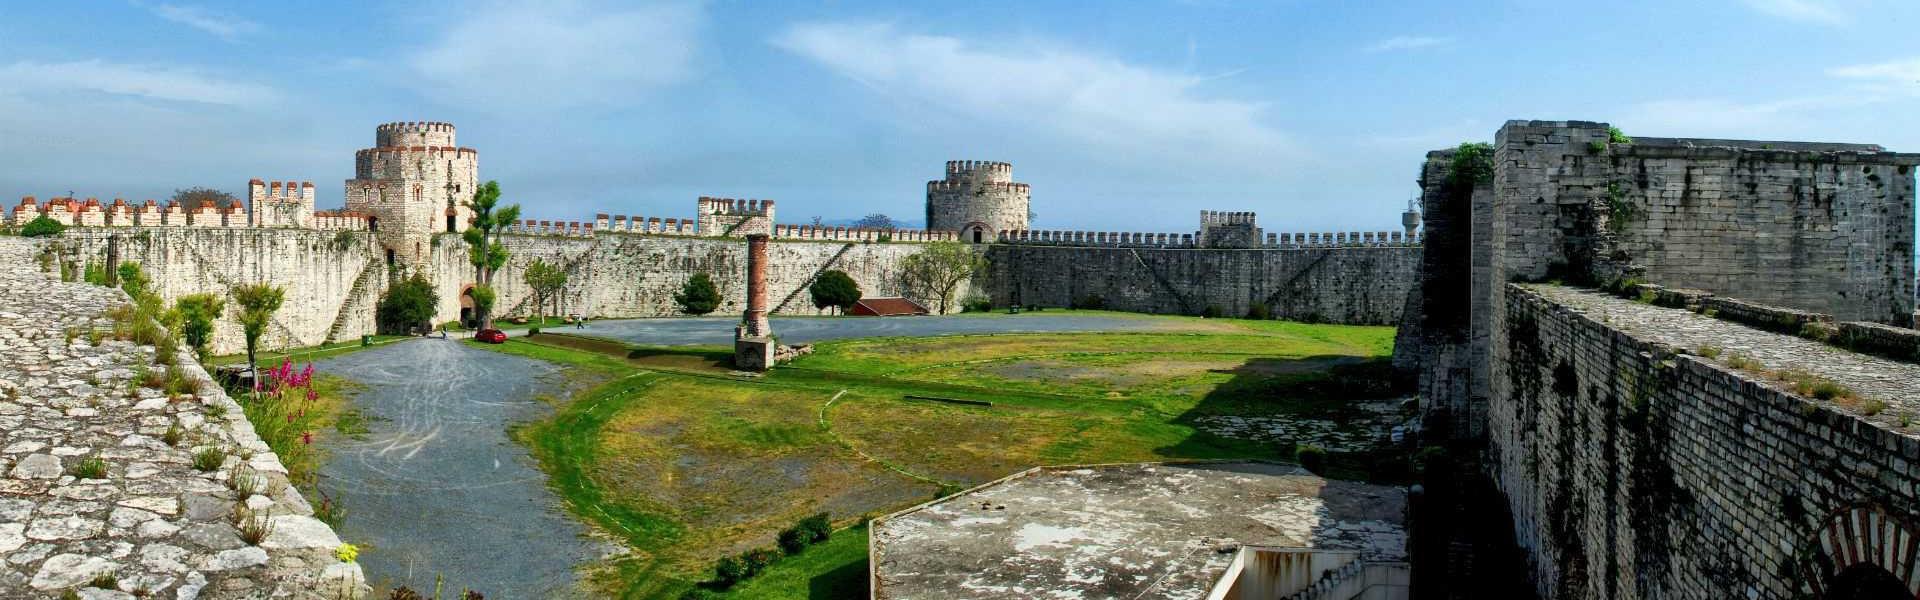 قلعه یدیکوله استانبول Yedikule fortress Istanbul